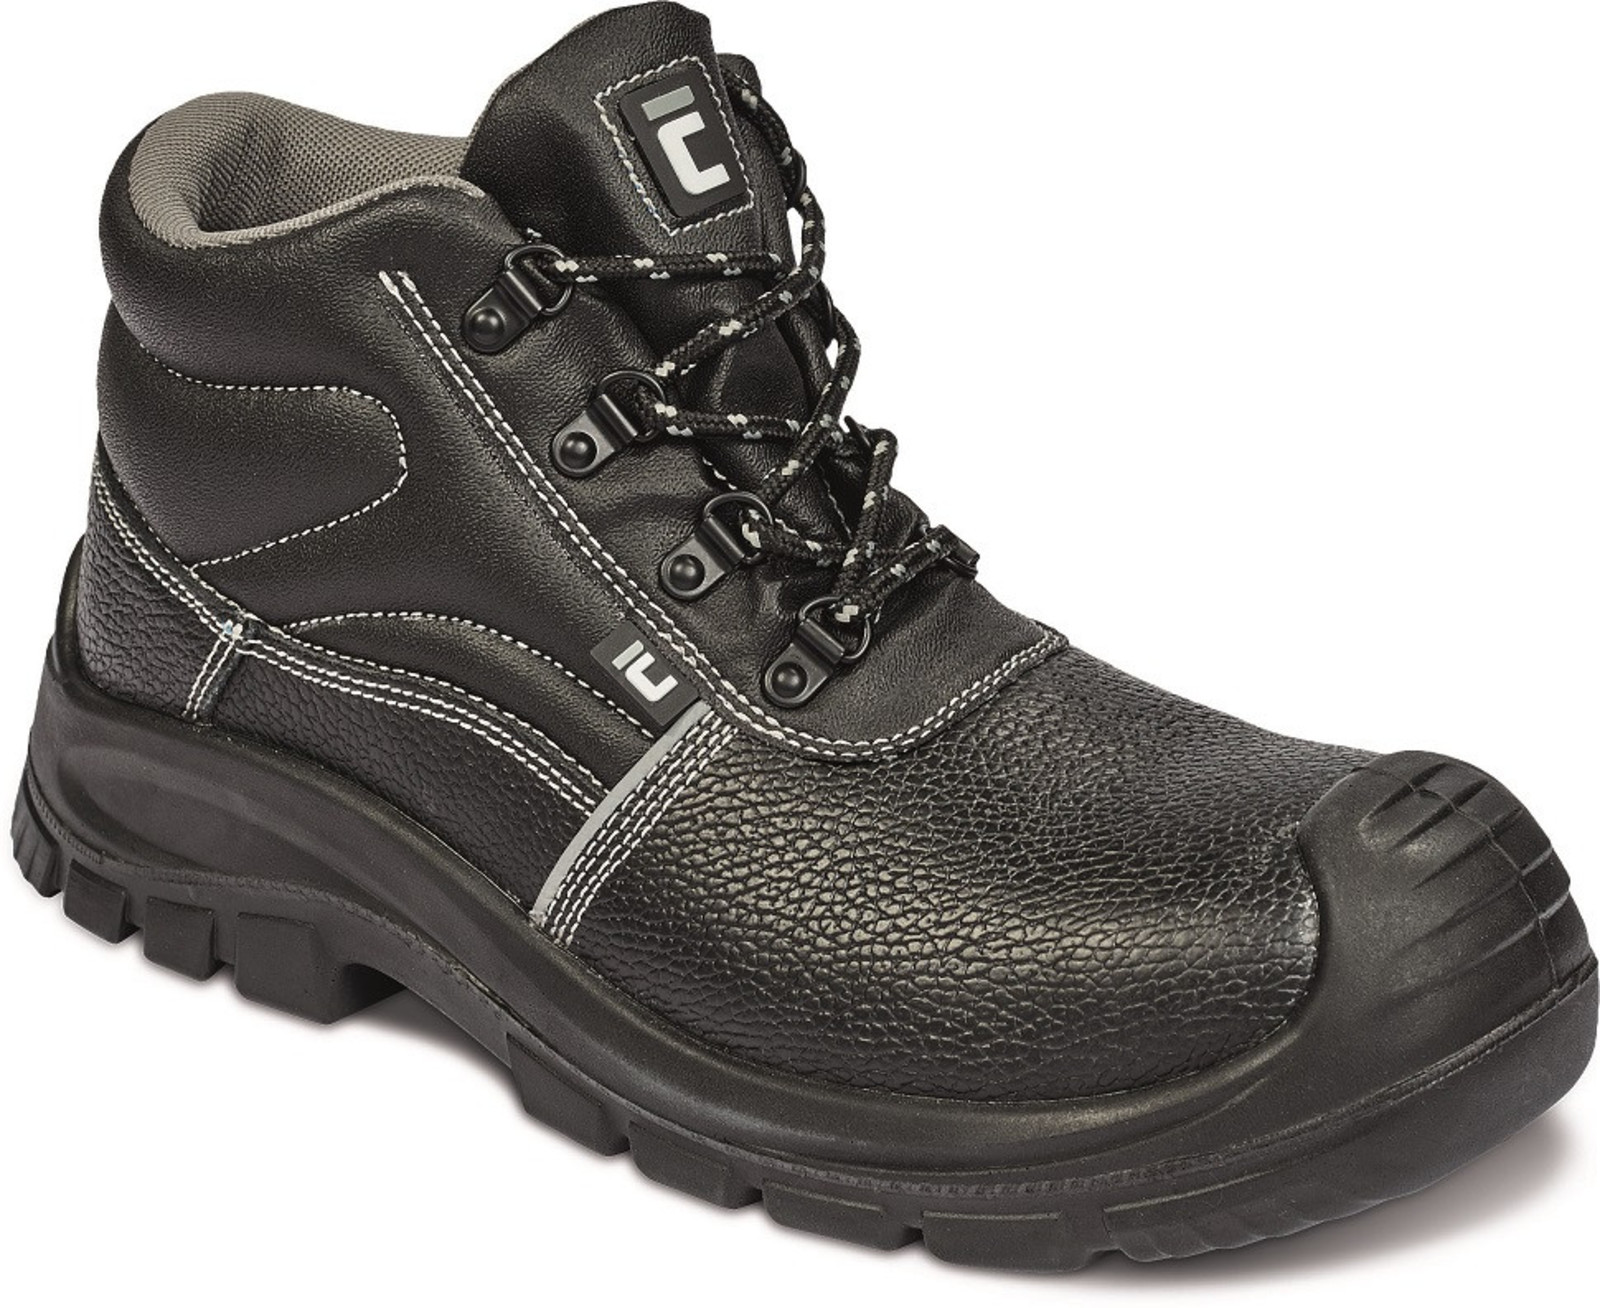 Bezpečnostná obuv Raven XT S3 Metal Free - veľkosť: 48, farba: čierna